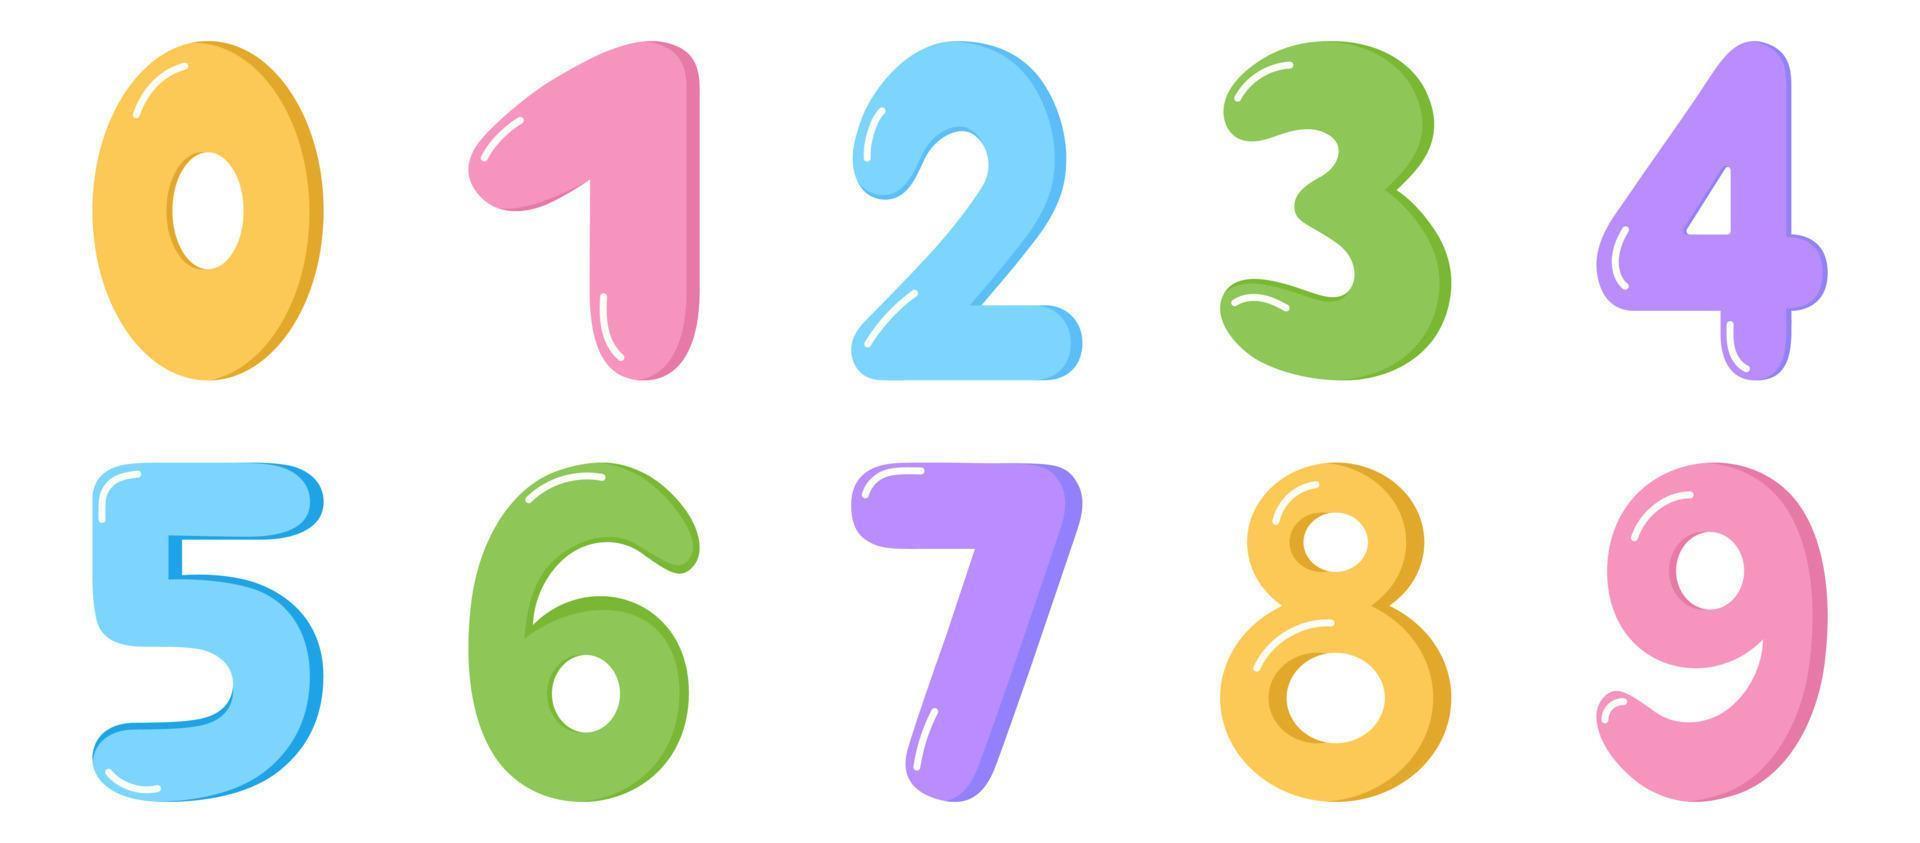 numeri di cartoni animati colorati impostati. numeri divertenti isolati per bambini su sfondo bianco. insieme di vettore delle icone del bambino di 1-9 cifre. simboli matematici della scuola.